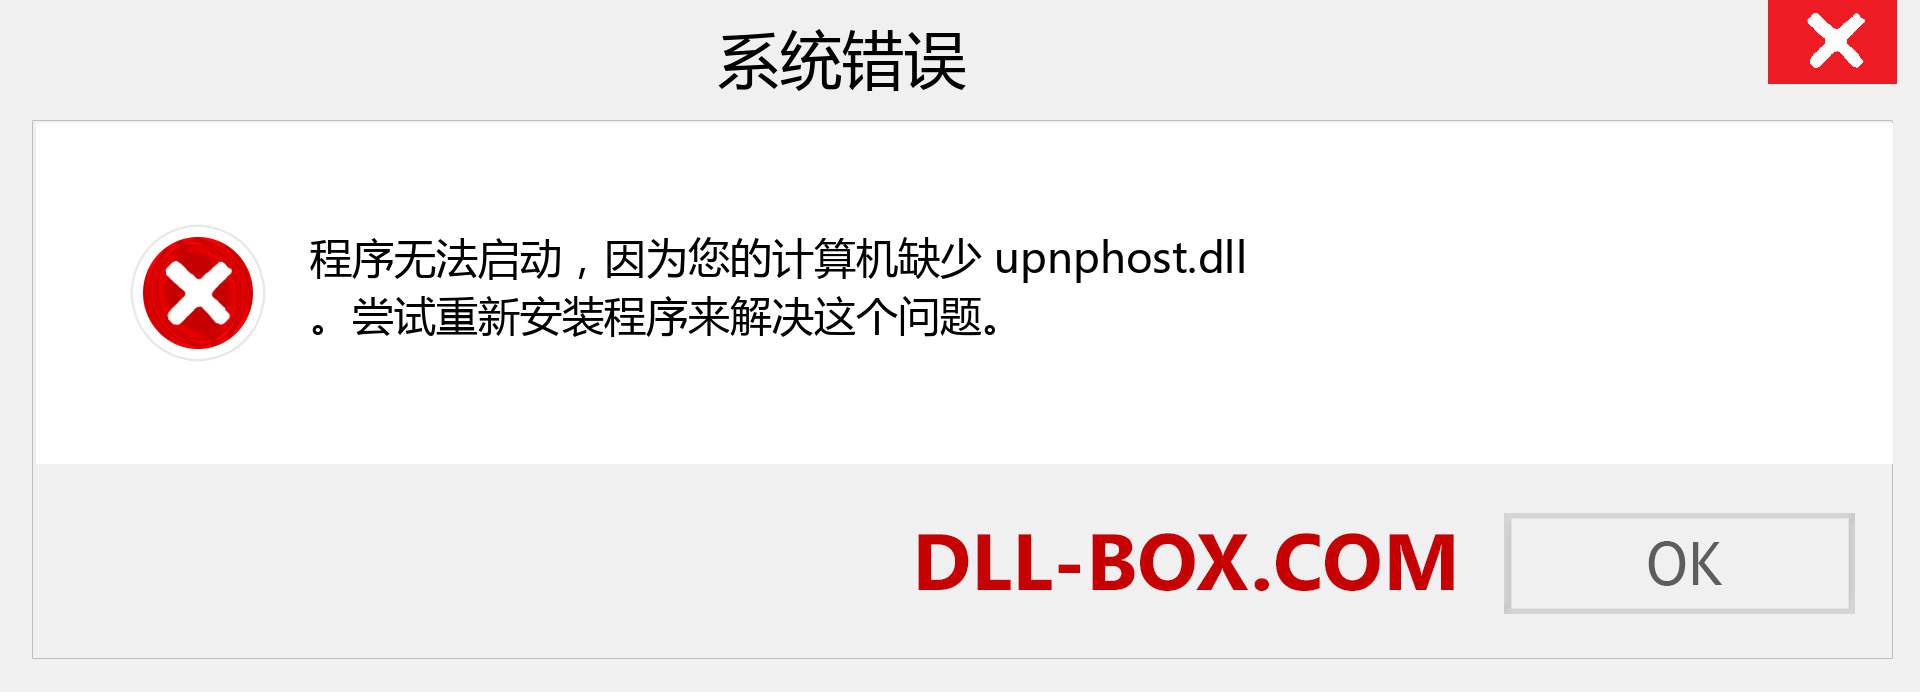 upnphost.dll 文件丢失？。 适用于 Windows 7、8、10 的下载 - 修复 Windows、照片、图像上的 upnphost dll 丢失错误